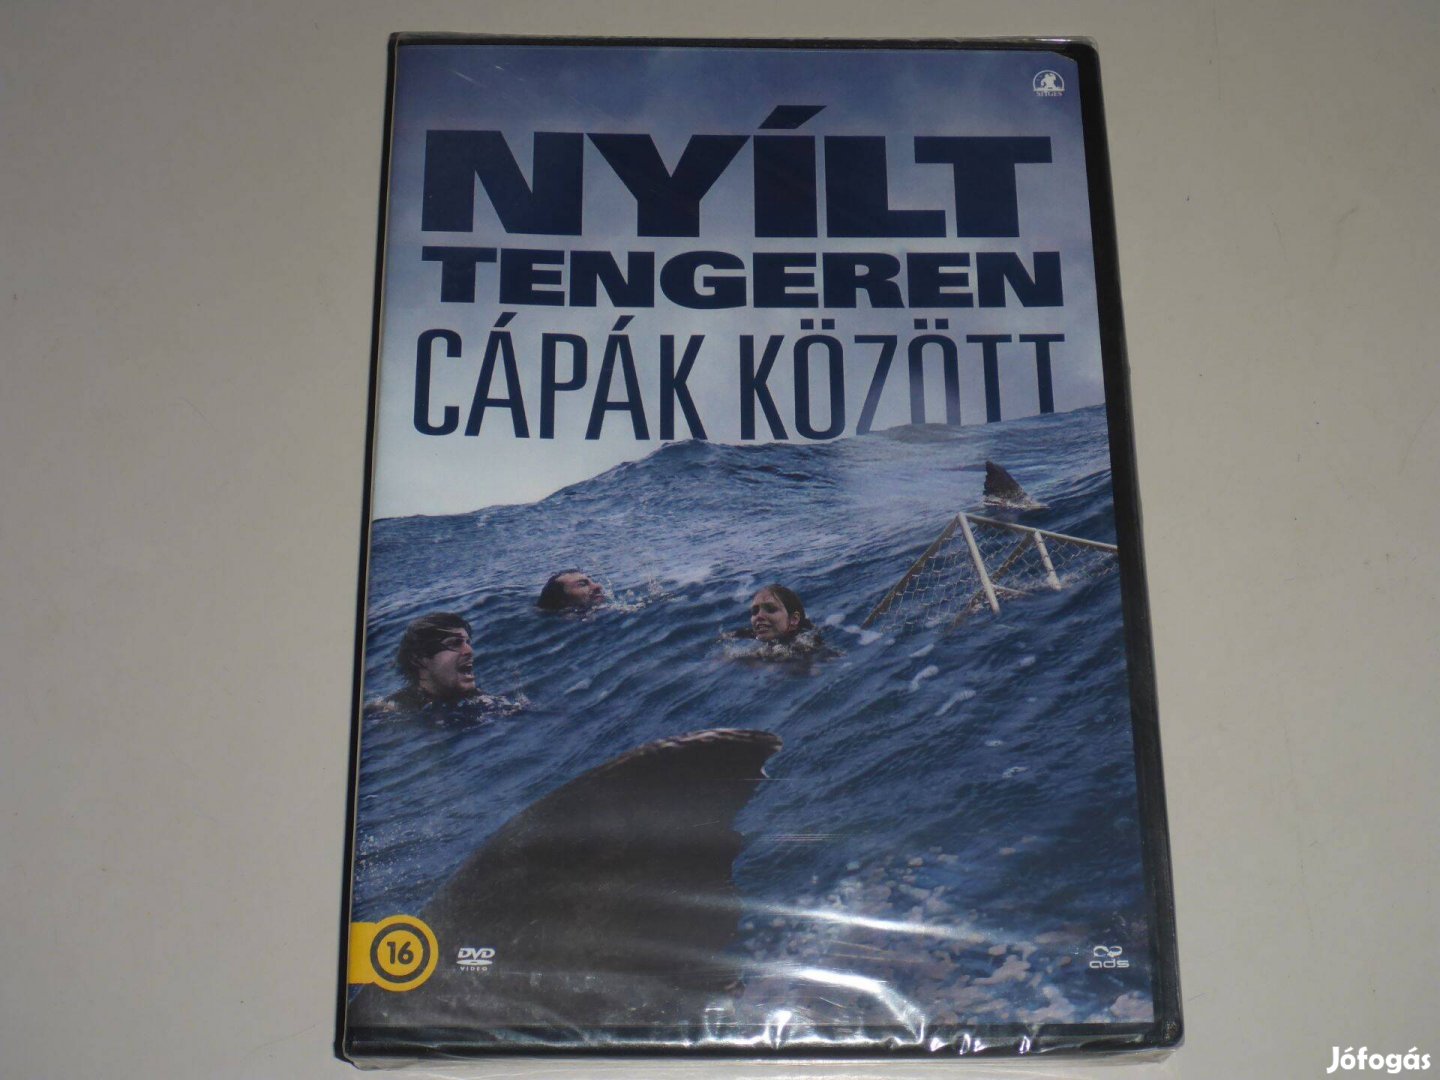 Nyílt tengeren Cápák között DVD film ;